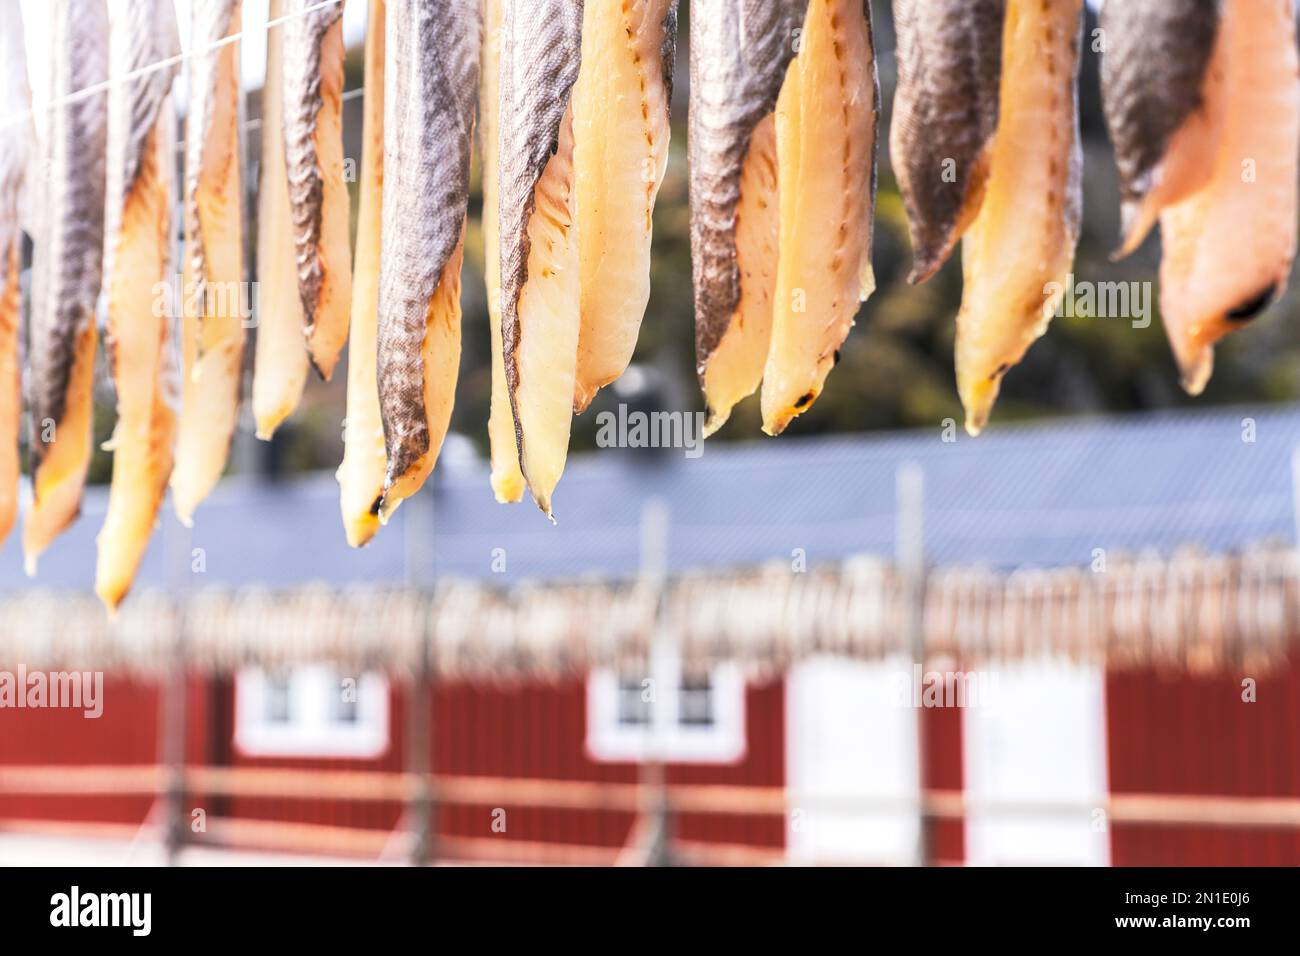 Stock di pesce sospeso all'asciutto, Nusfjord, Isole Lofoten, Norvegia, Scandinavia, Europa Foto Stock